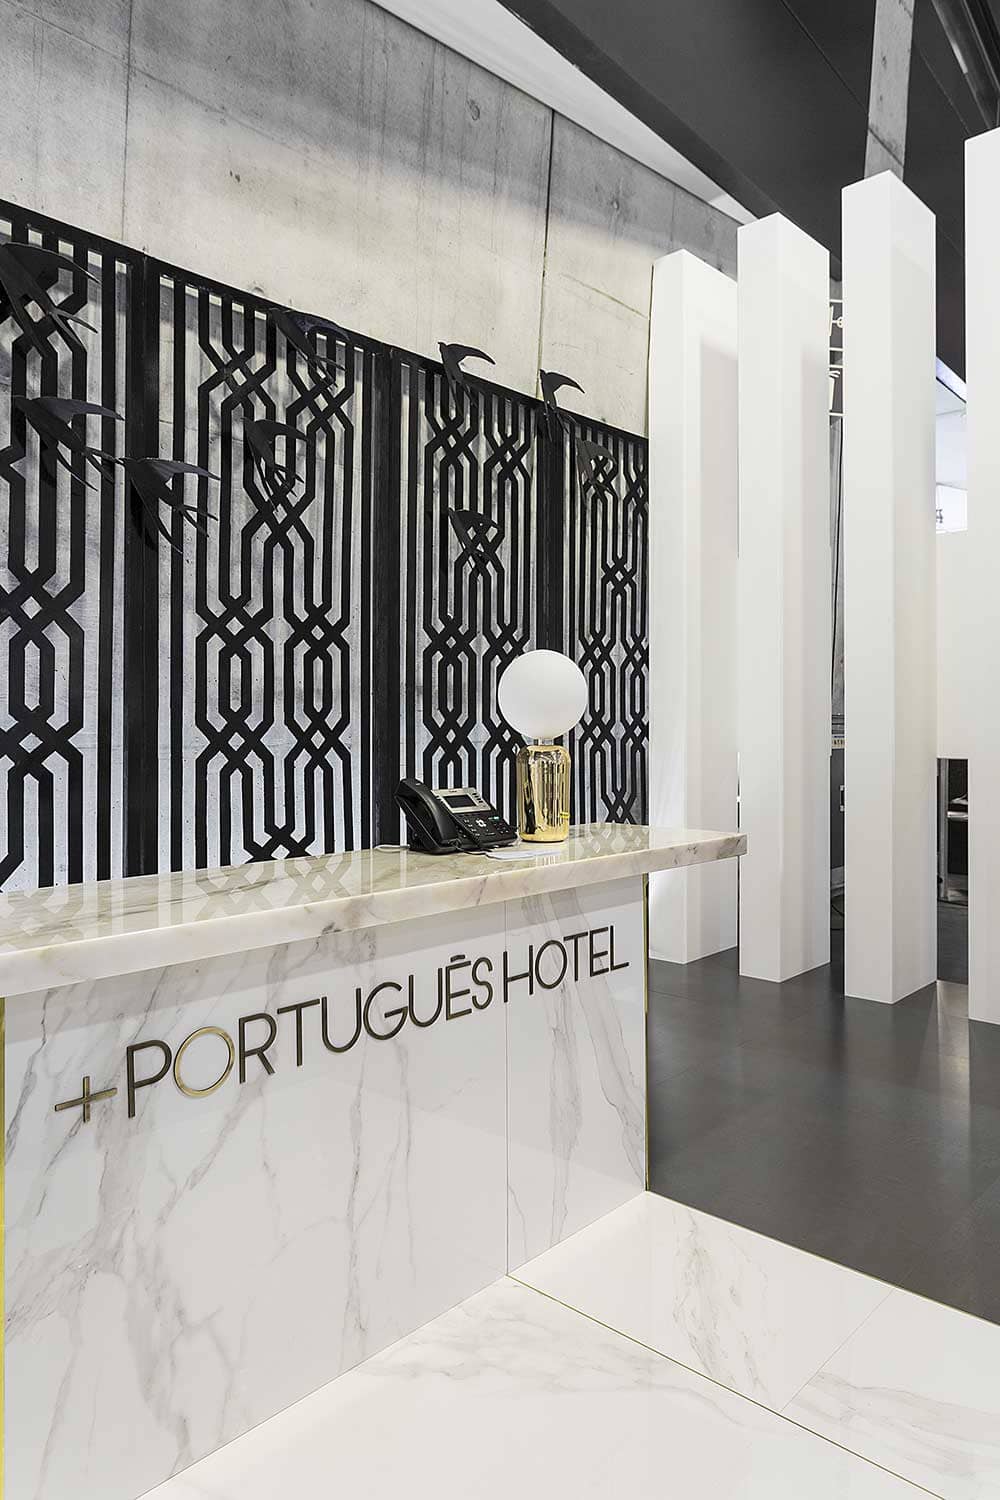 + Português Hotel do Mundo